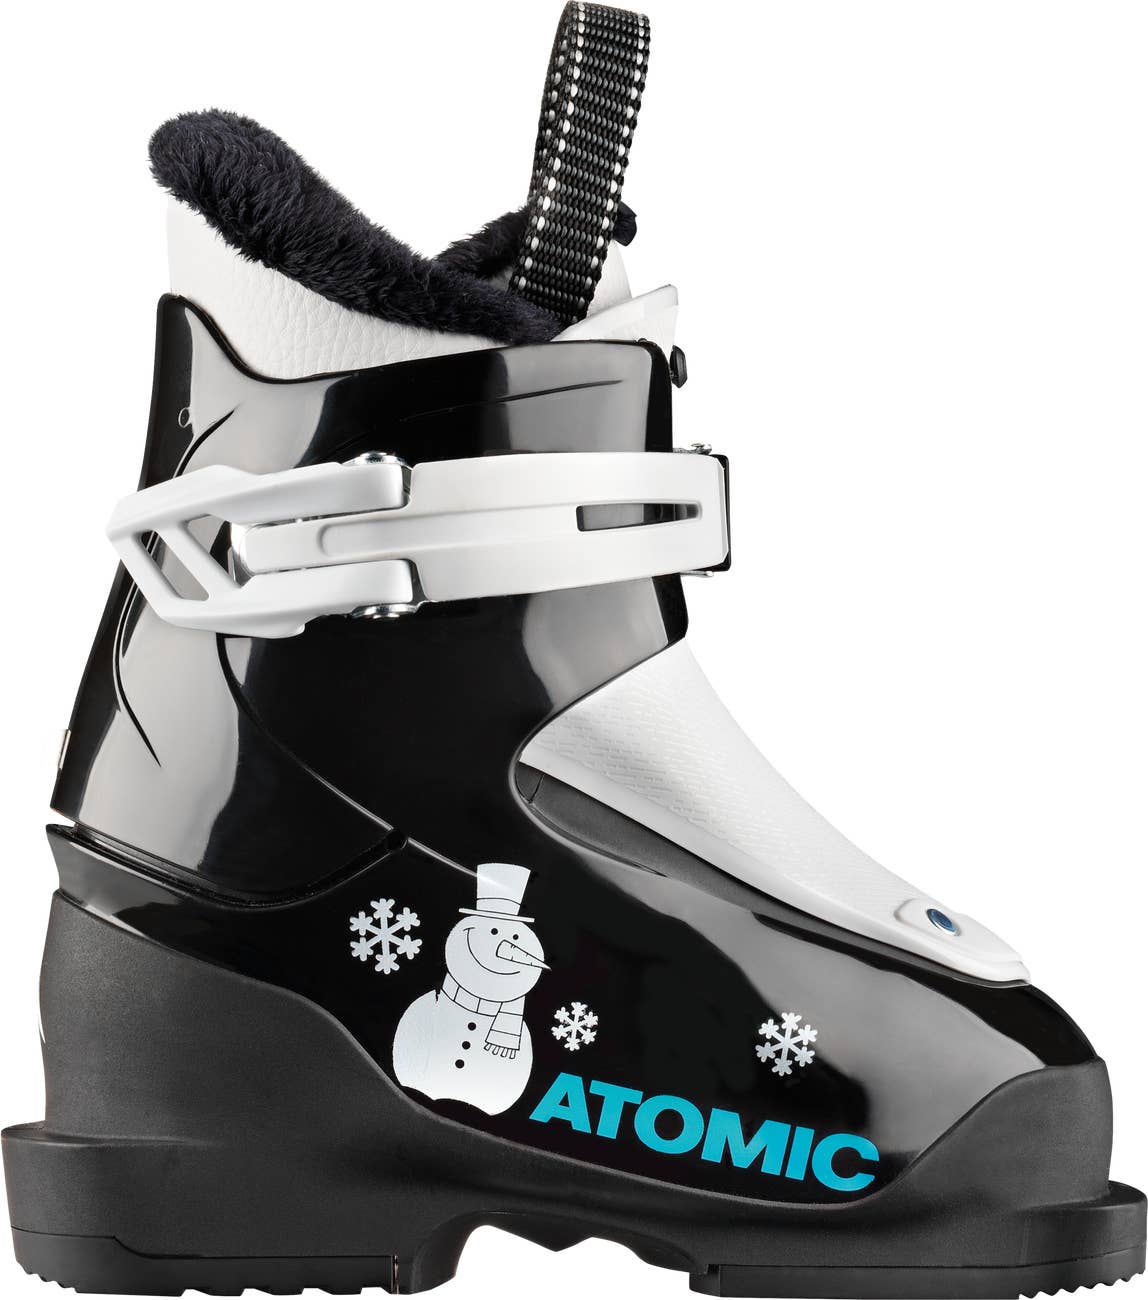 Hawx JR 1 Village Ski Hut Atomic Junior, Junior Boots, Ski, Winter 2023